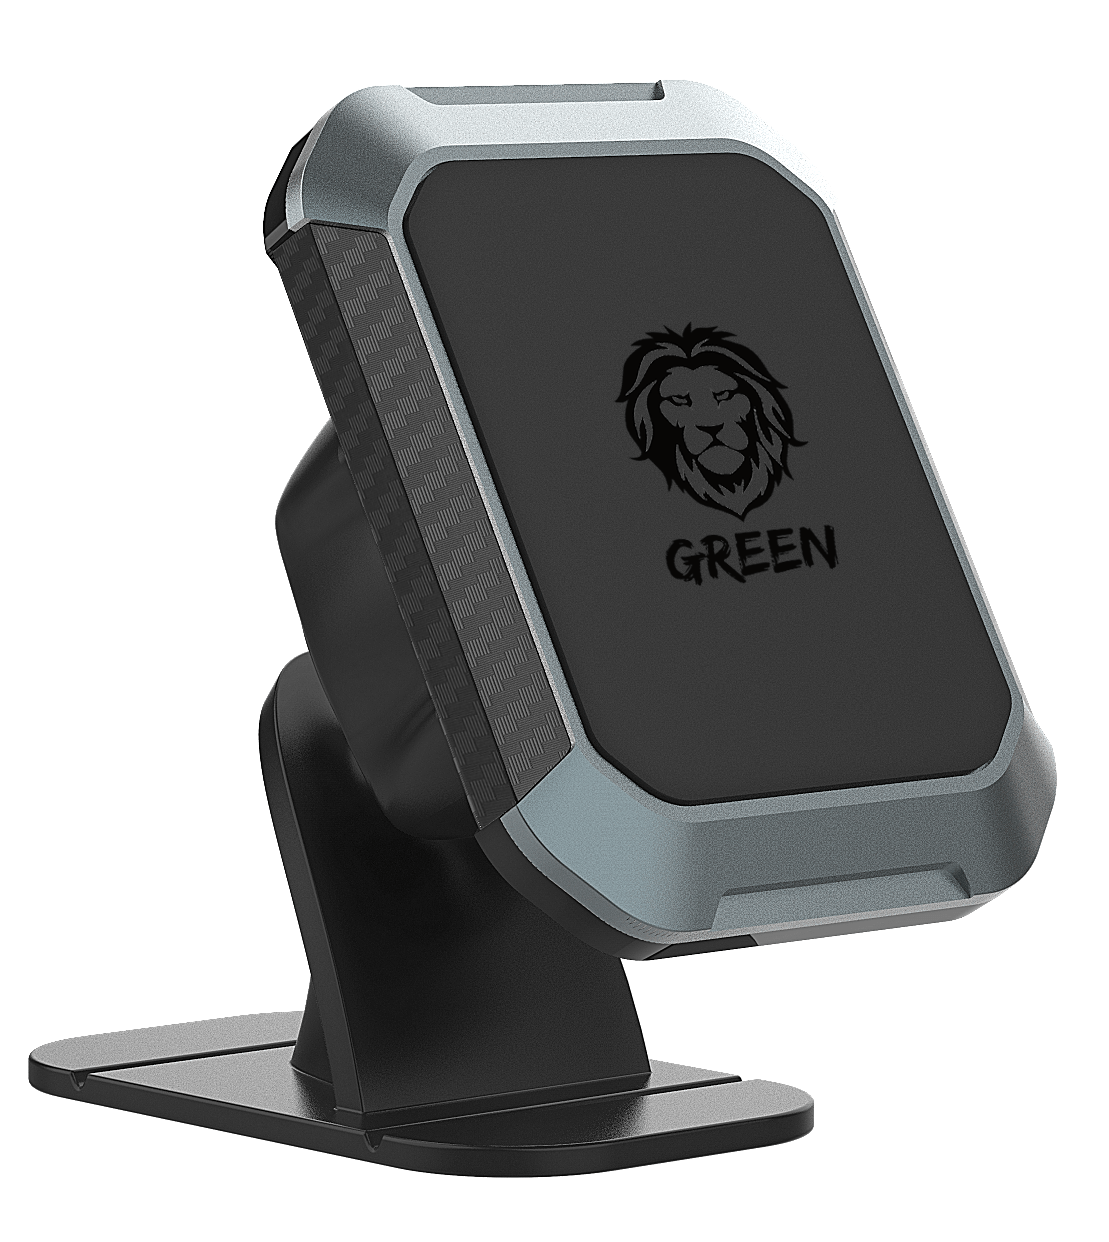 حامل جوال للسيارة مغناطيس 360 درجة أسود جرين ليون Green Lion Green Magnetic Black 360" Car Phone Holder - 5}